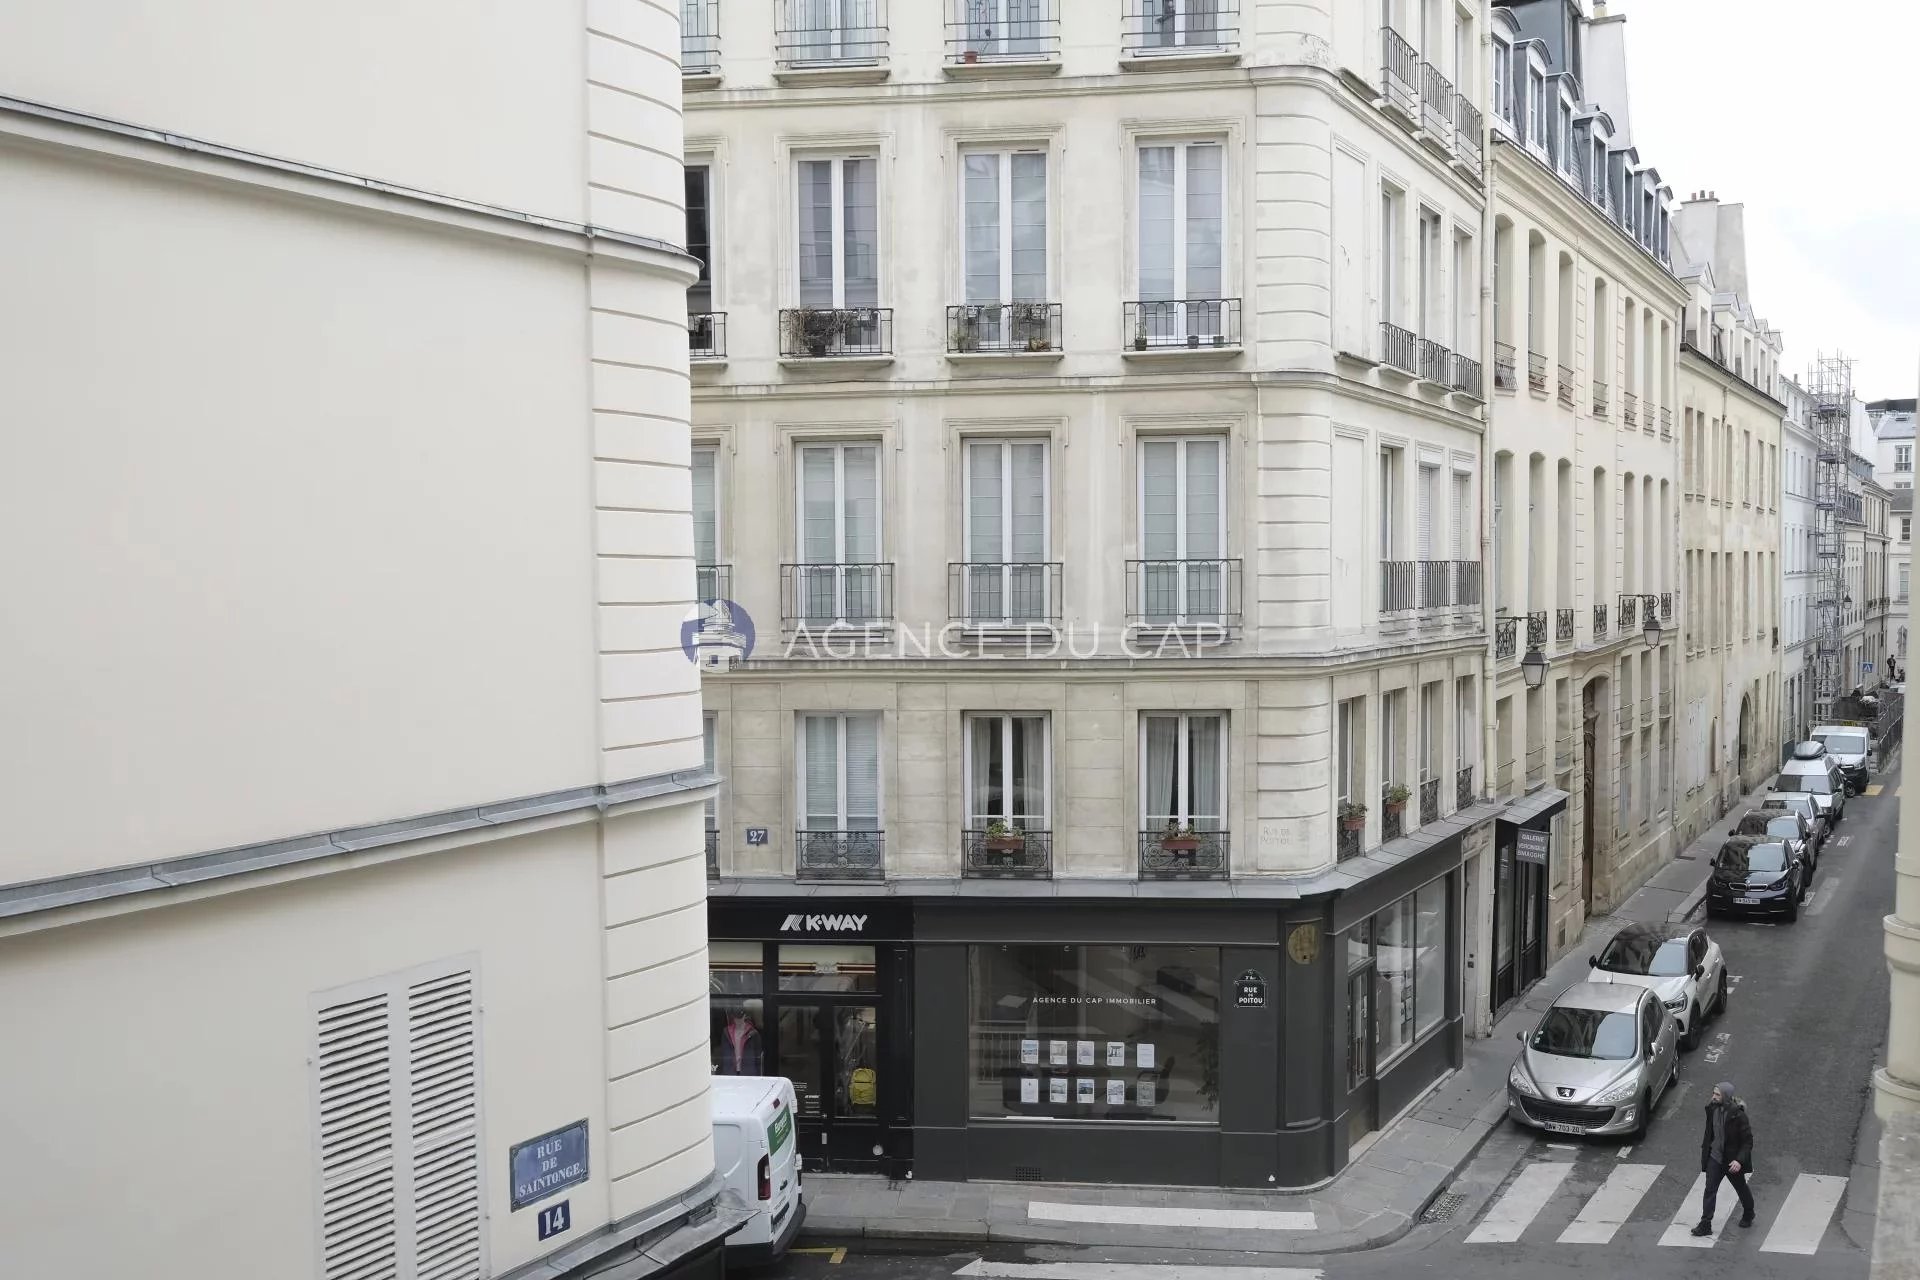 Sale Apartment - Paris 3rd (Paris 3ème)